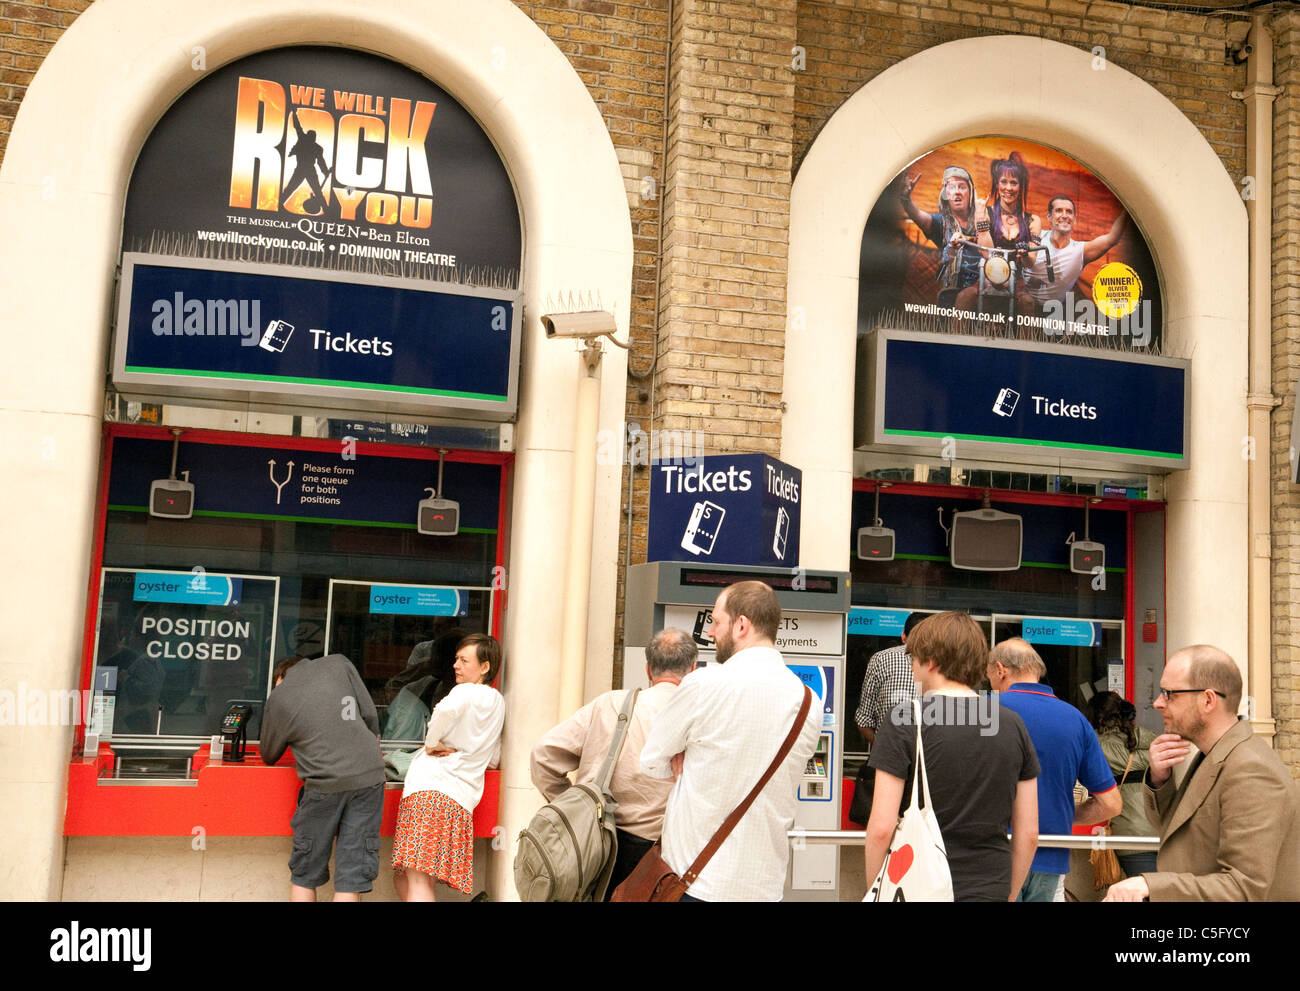 Les gens faisant la queue pour acheter des billets de train, la gare de Charing Cross, Londres, UK Banque D'Images